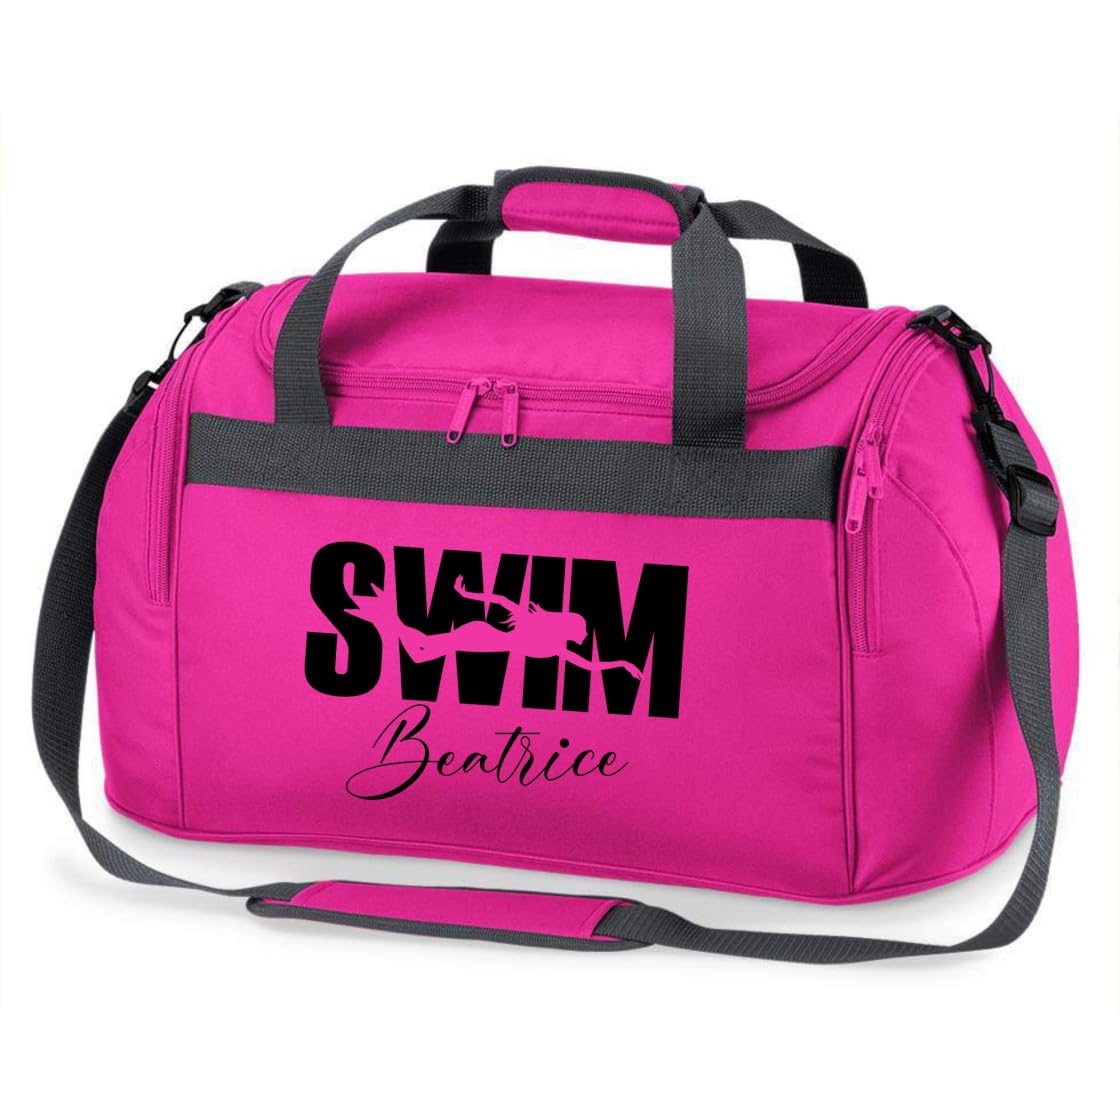 minimutz Sporttasche Schwimmen für Kinder - Personalisierbar mit Name - Schwimmtasche Swim Duffle Bag für Mädchen und Jungen (pink)